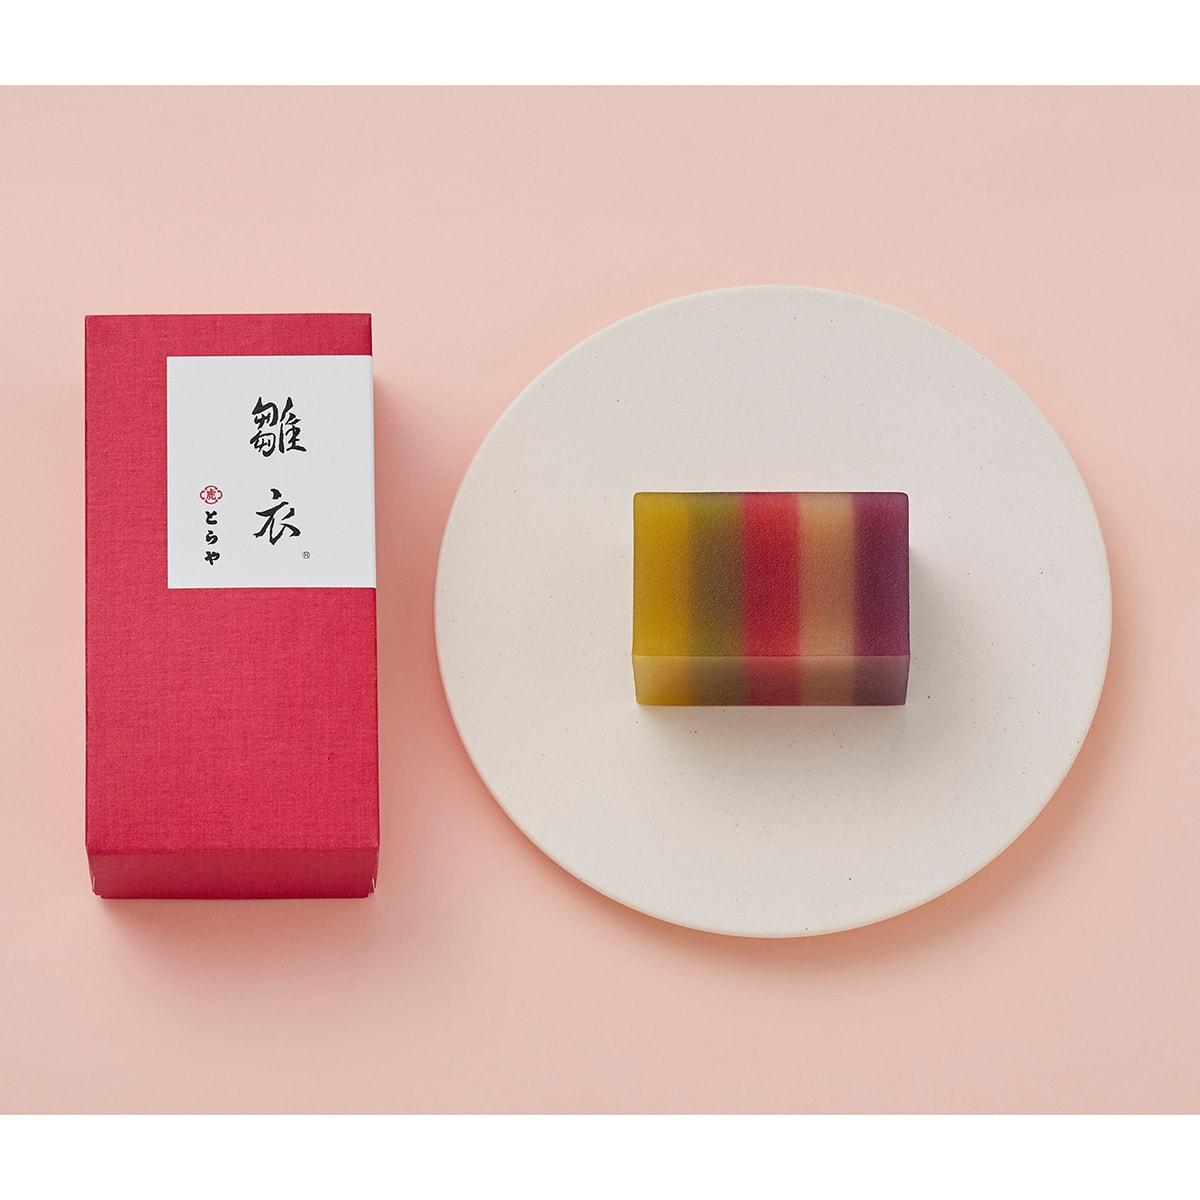 〈とらや〉で感じる春の味。雛まつりや桜、いちごをテーマにした和菓子が勢揃い - Slide:1